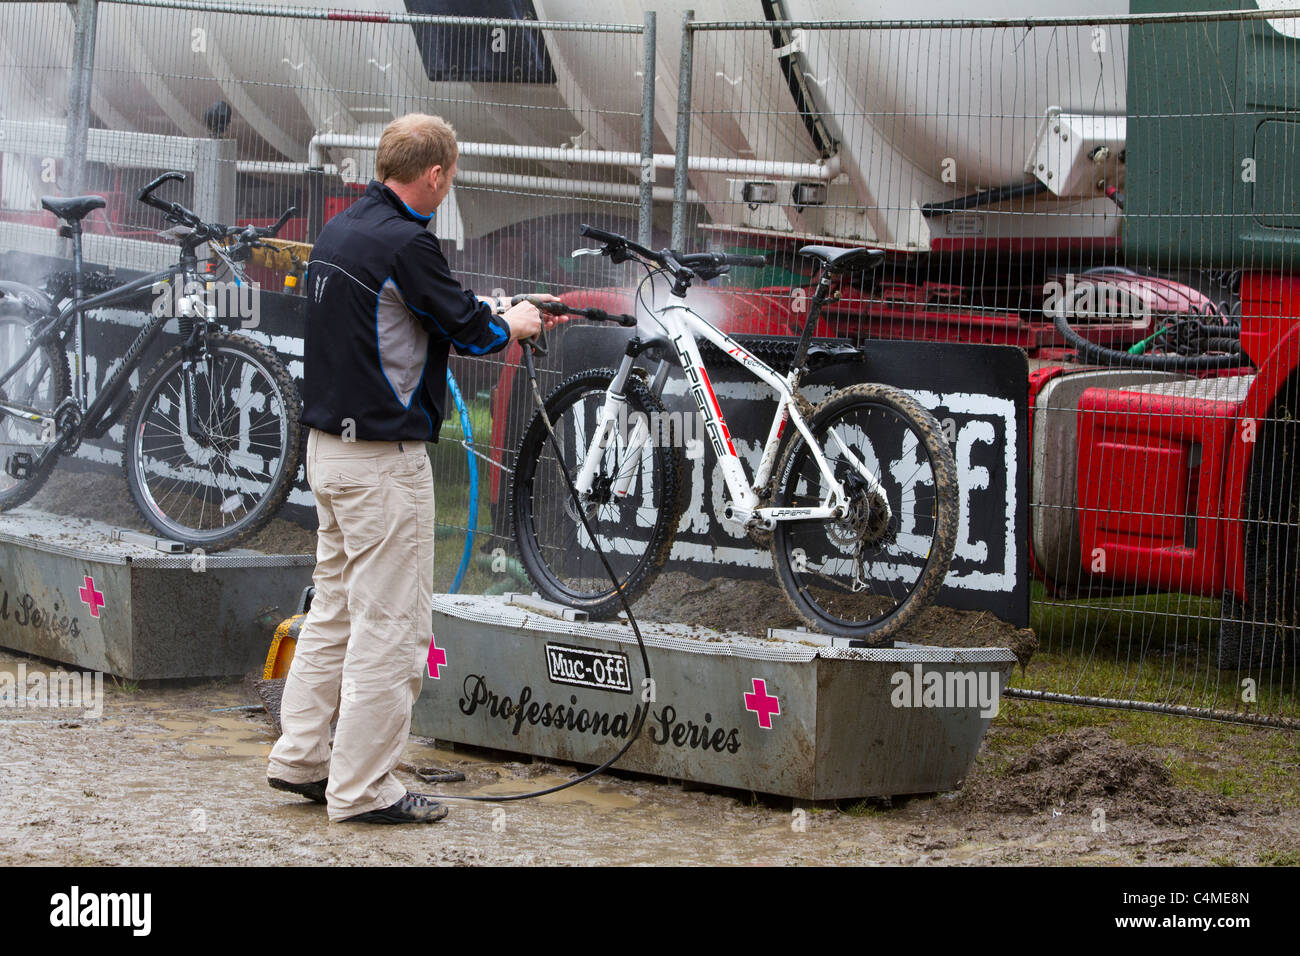 Bike wash immagini e fotografie stock ad alta risoluzione - Alamy